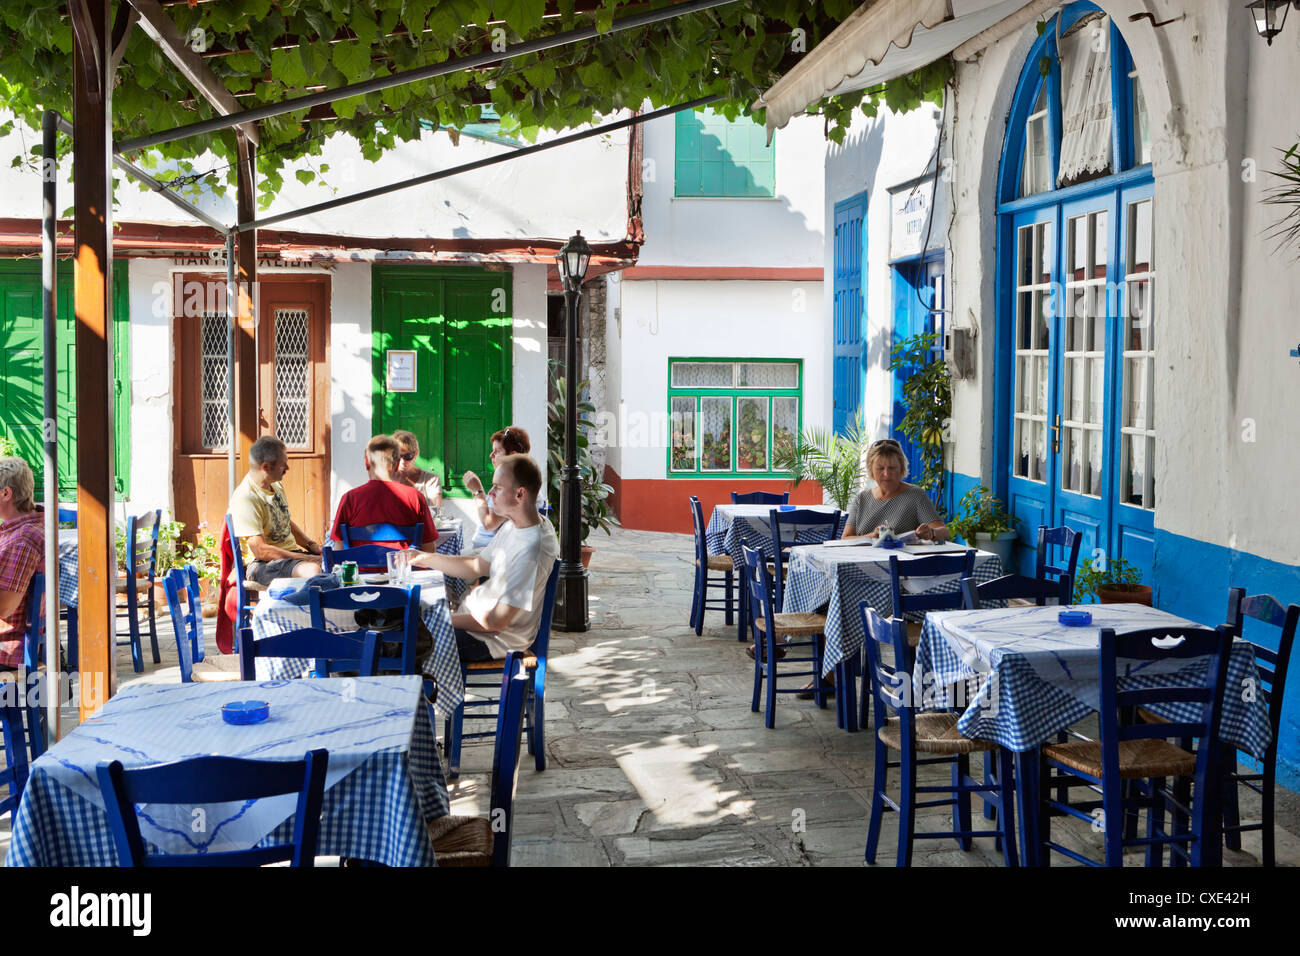 Griechische Taverne im Zentrum von Berg Dorf, Vourliotes, Samos, Ägäische Inseln, Griechenland Stockfoto